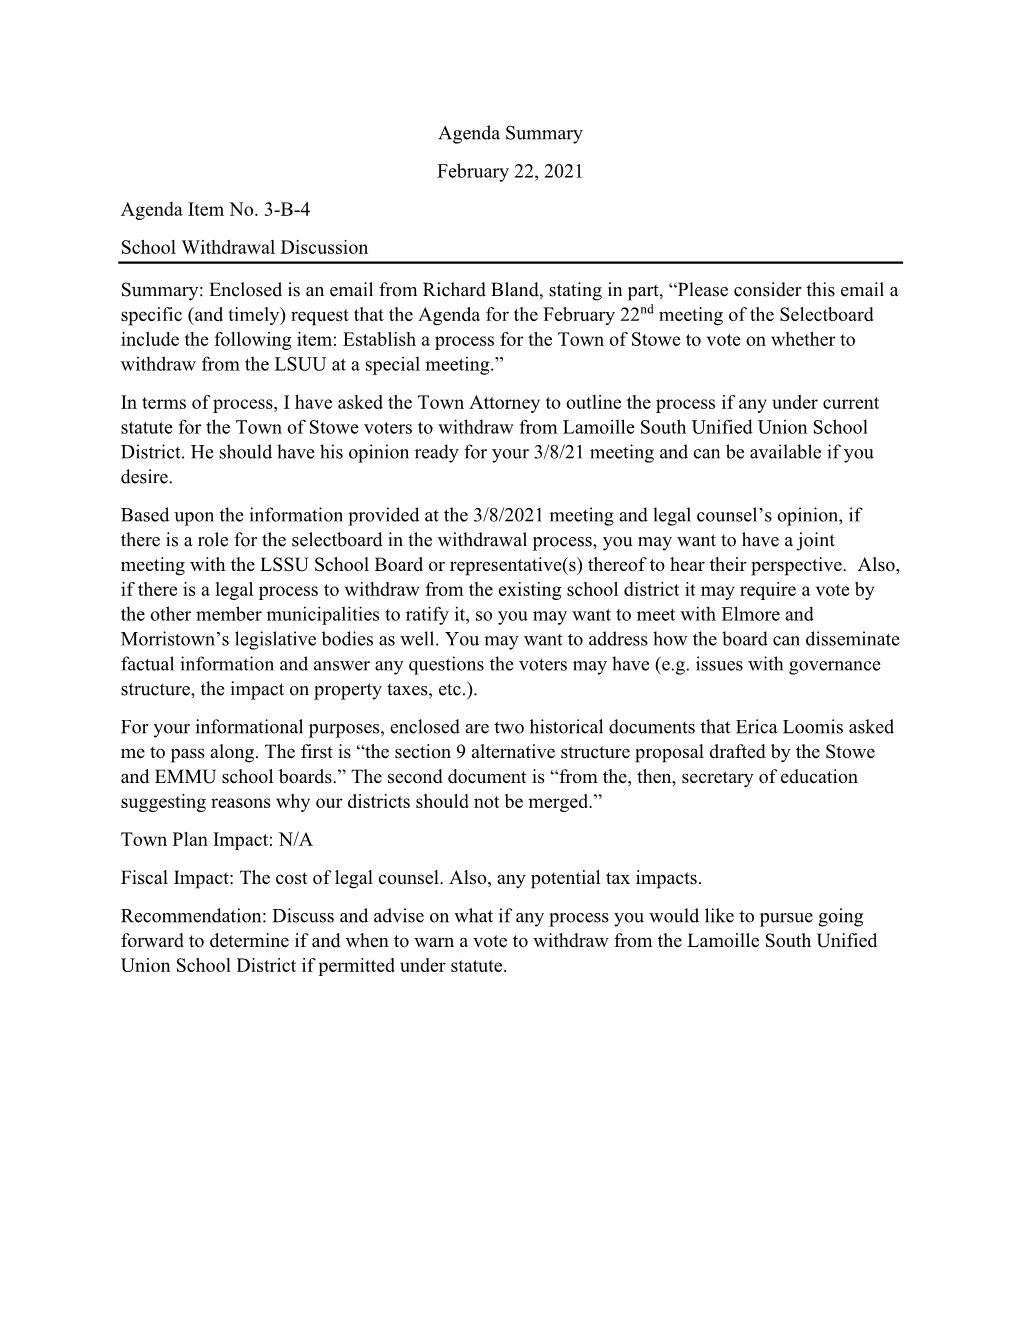 Item 3-B-4 LSUU School District Withdrawal Discussion